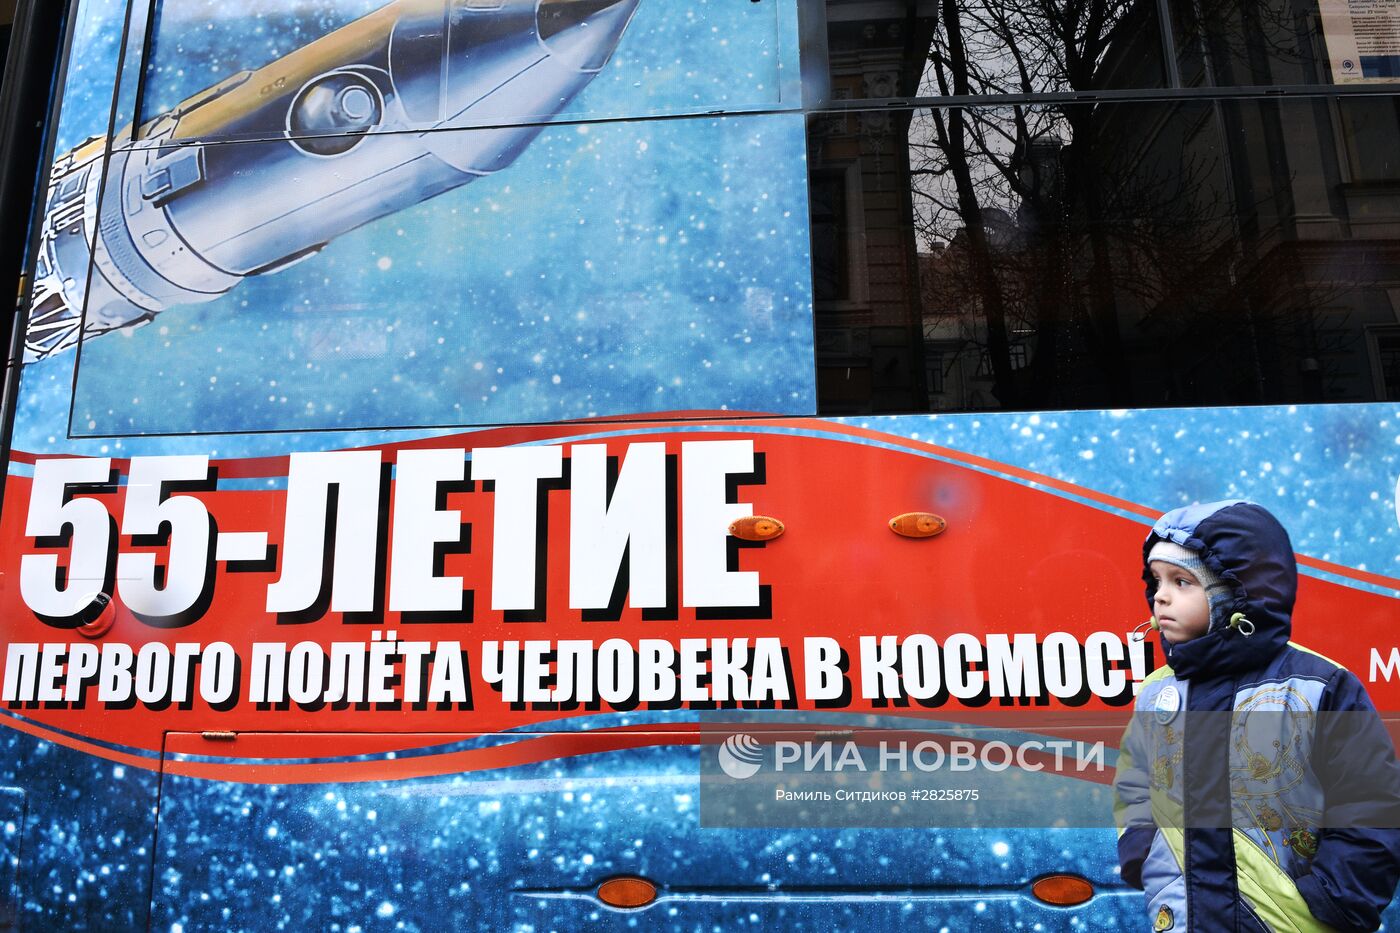 Праздник московского трамвая на Чистых прудах